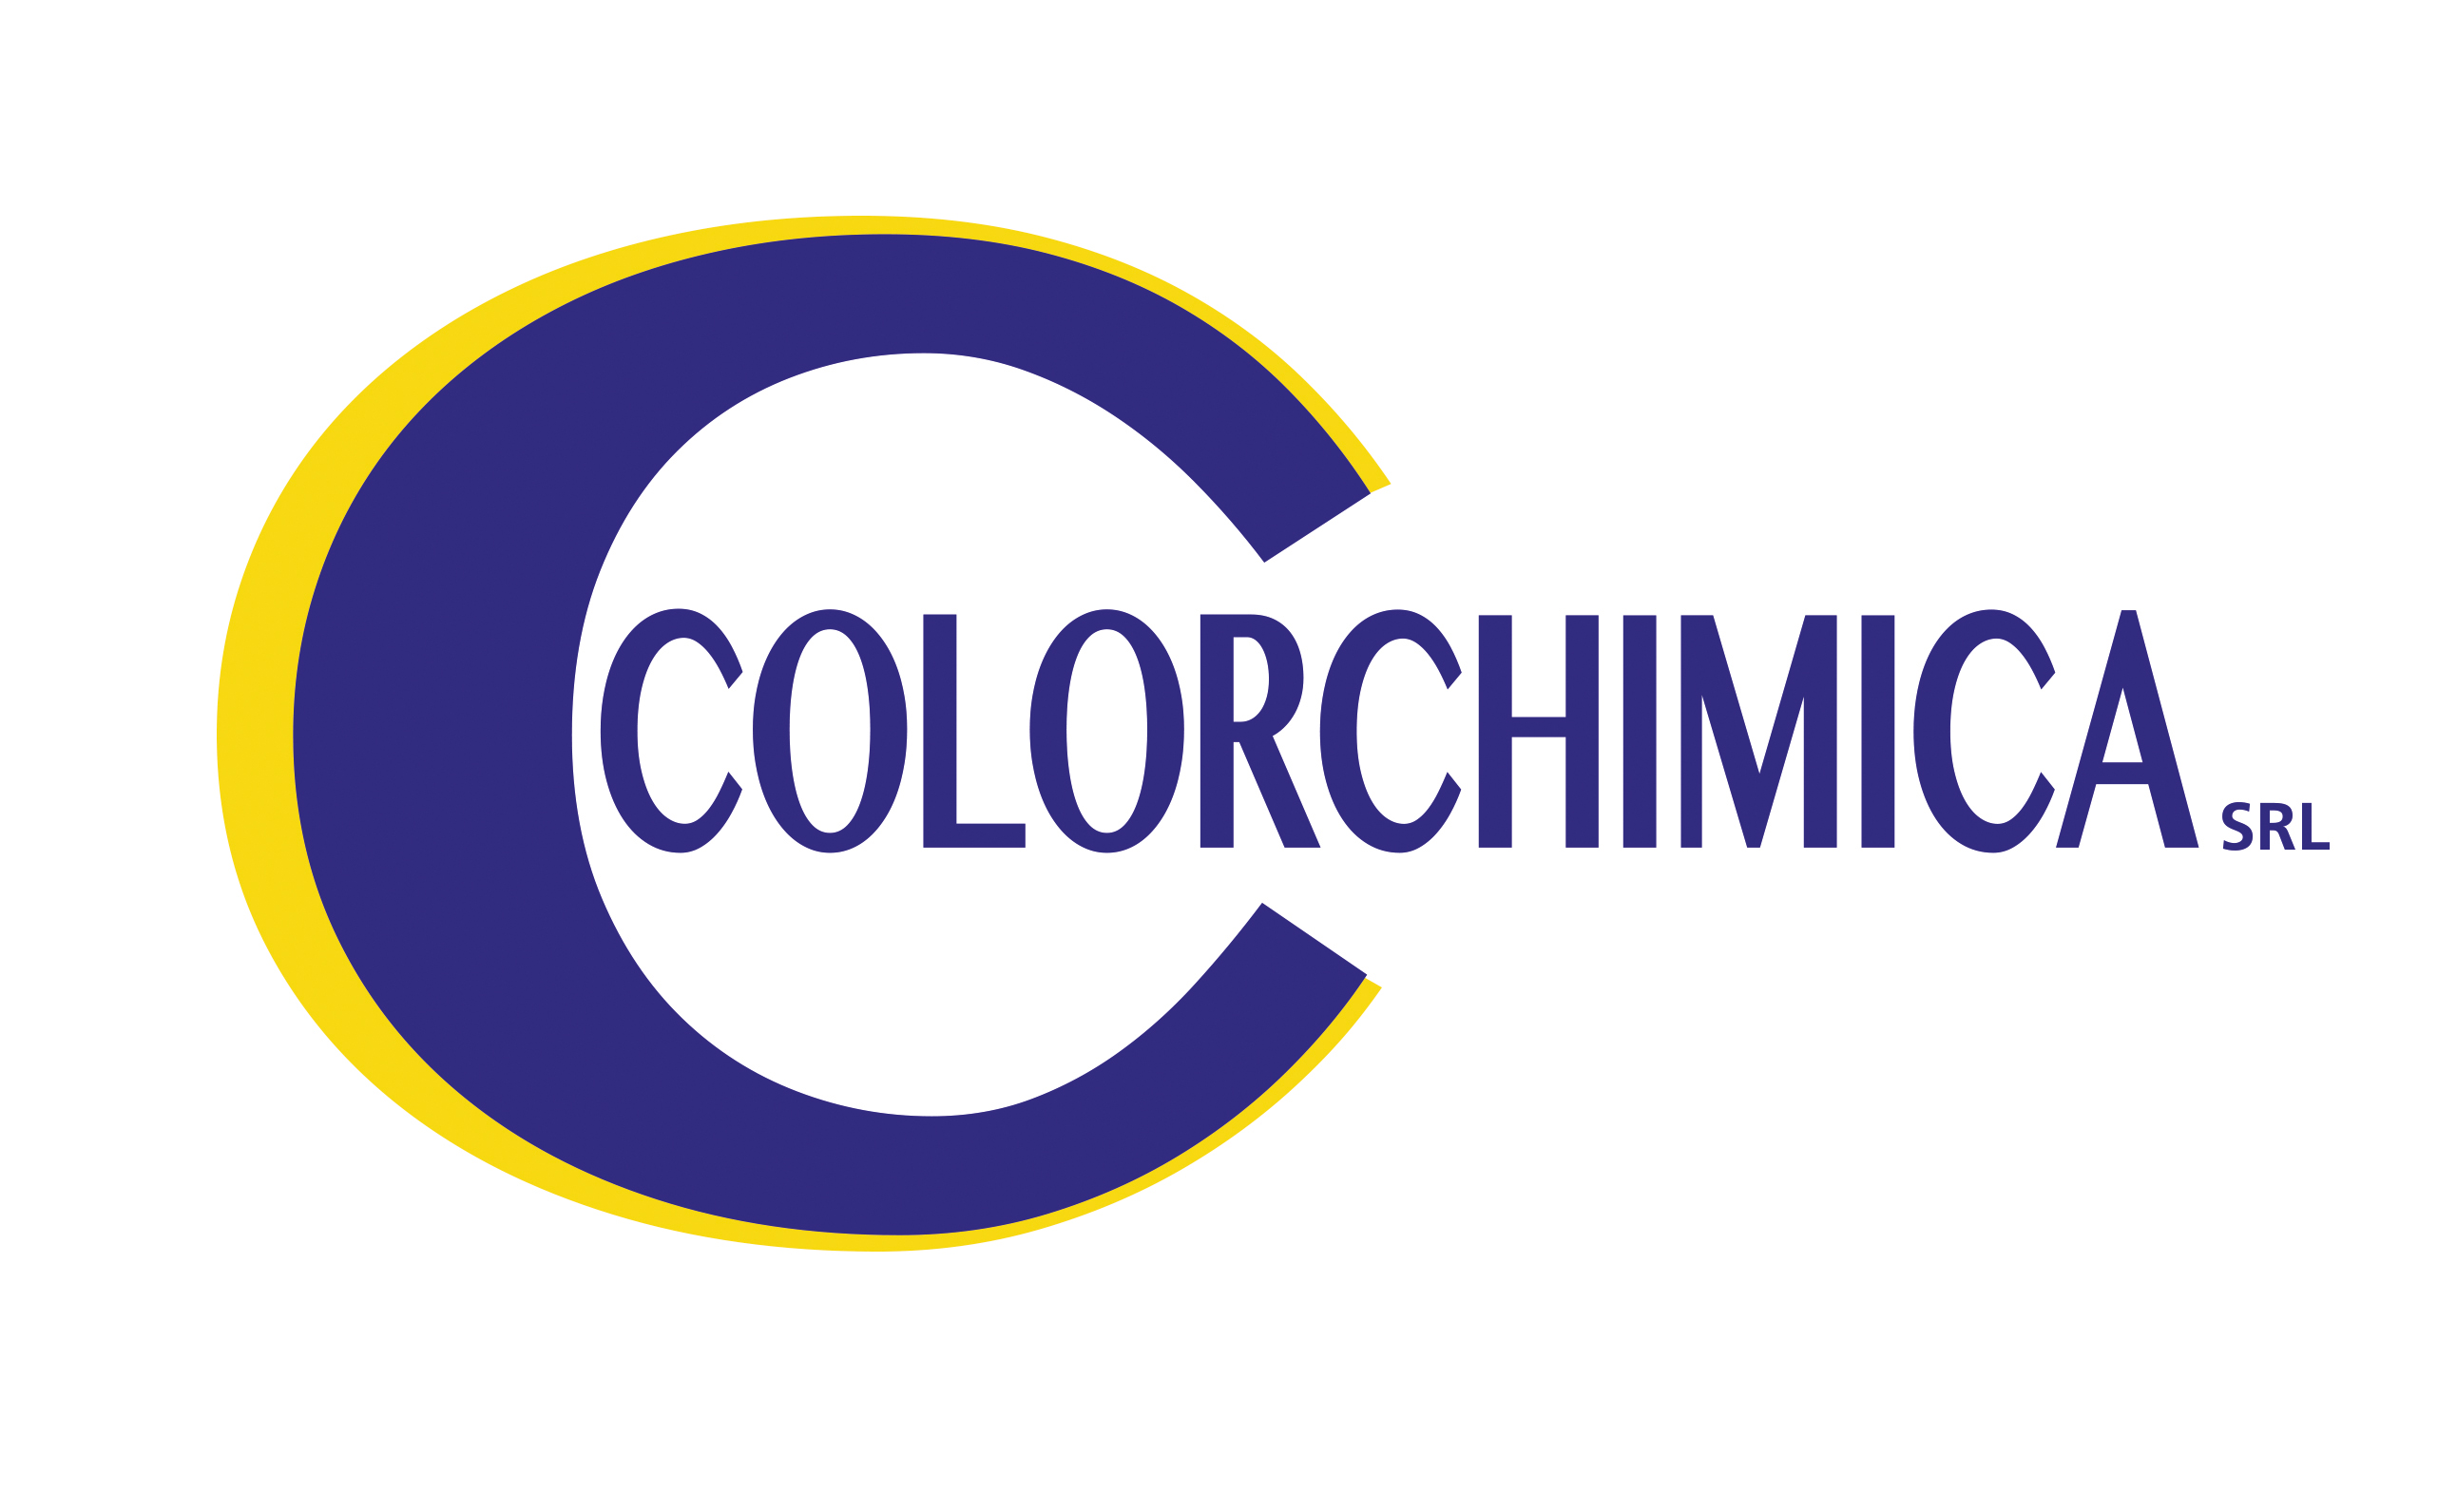 Colorchimica Logo A4 SRL